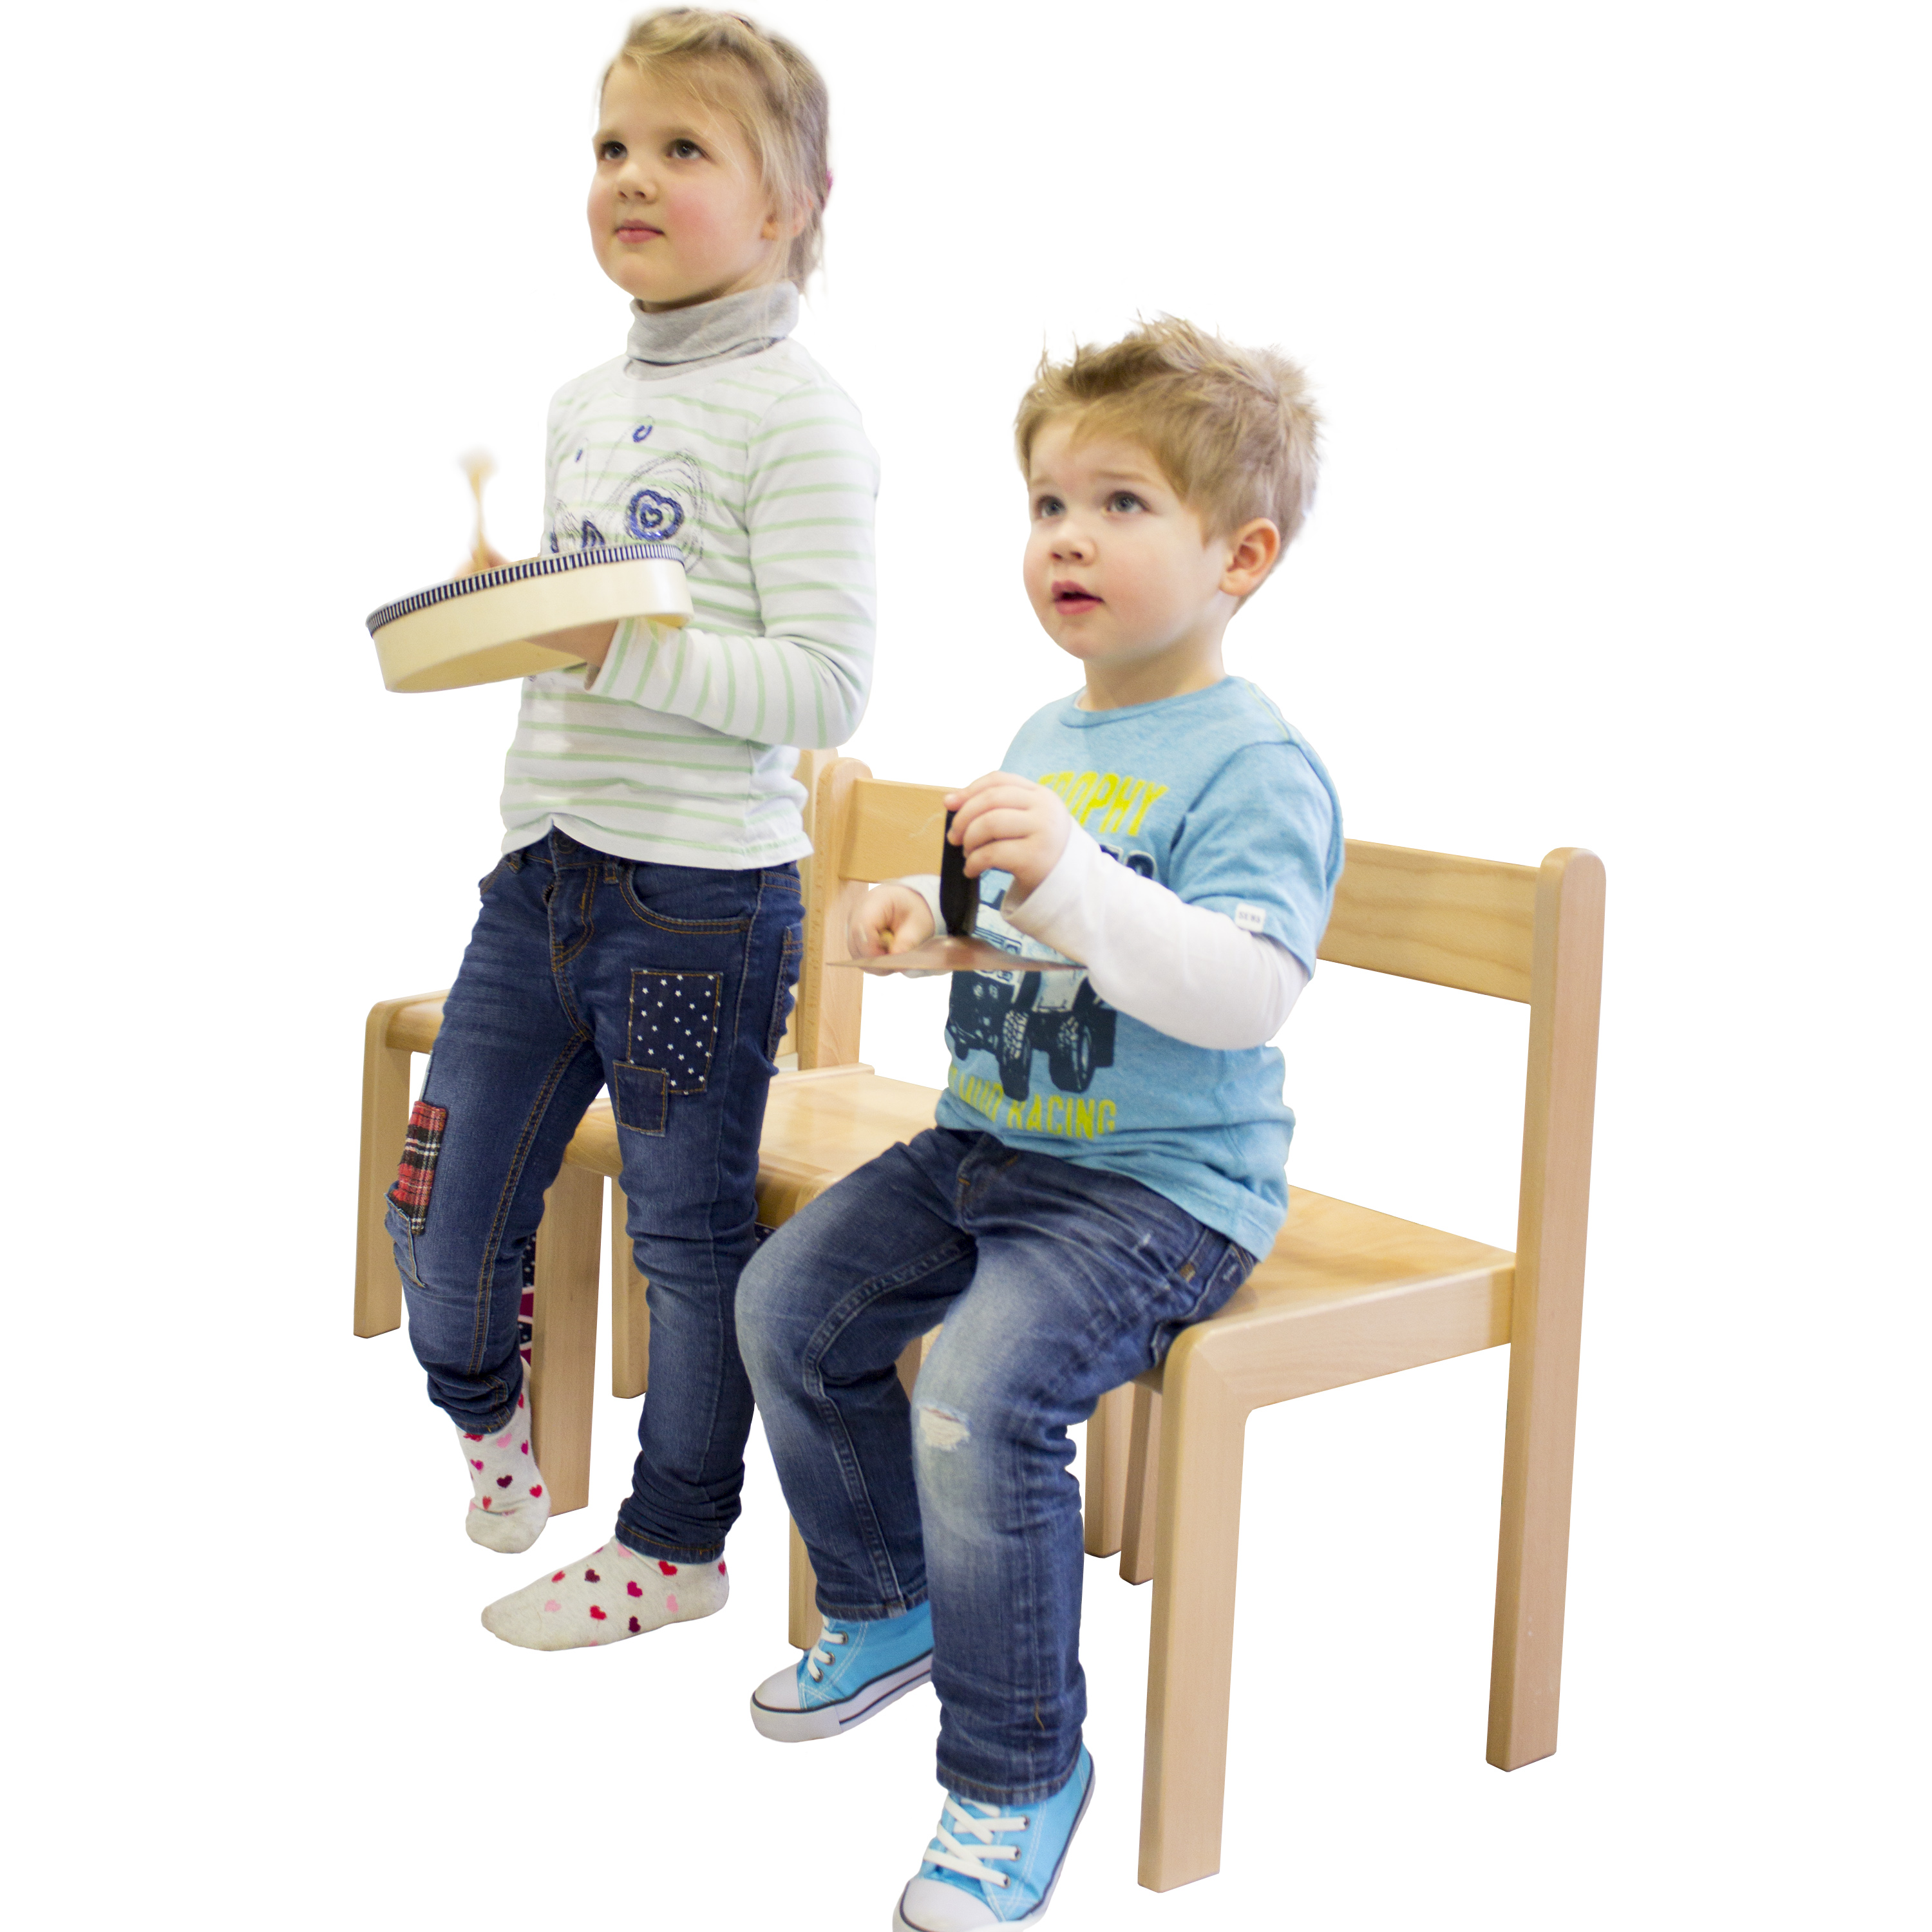 Kindergartenstuhl 'JANNIS', stapelbar, Sitzhöhe 30 cm